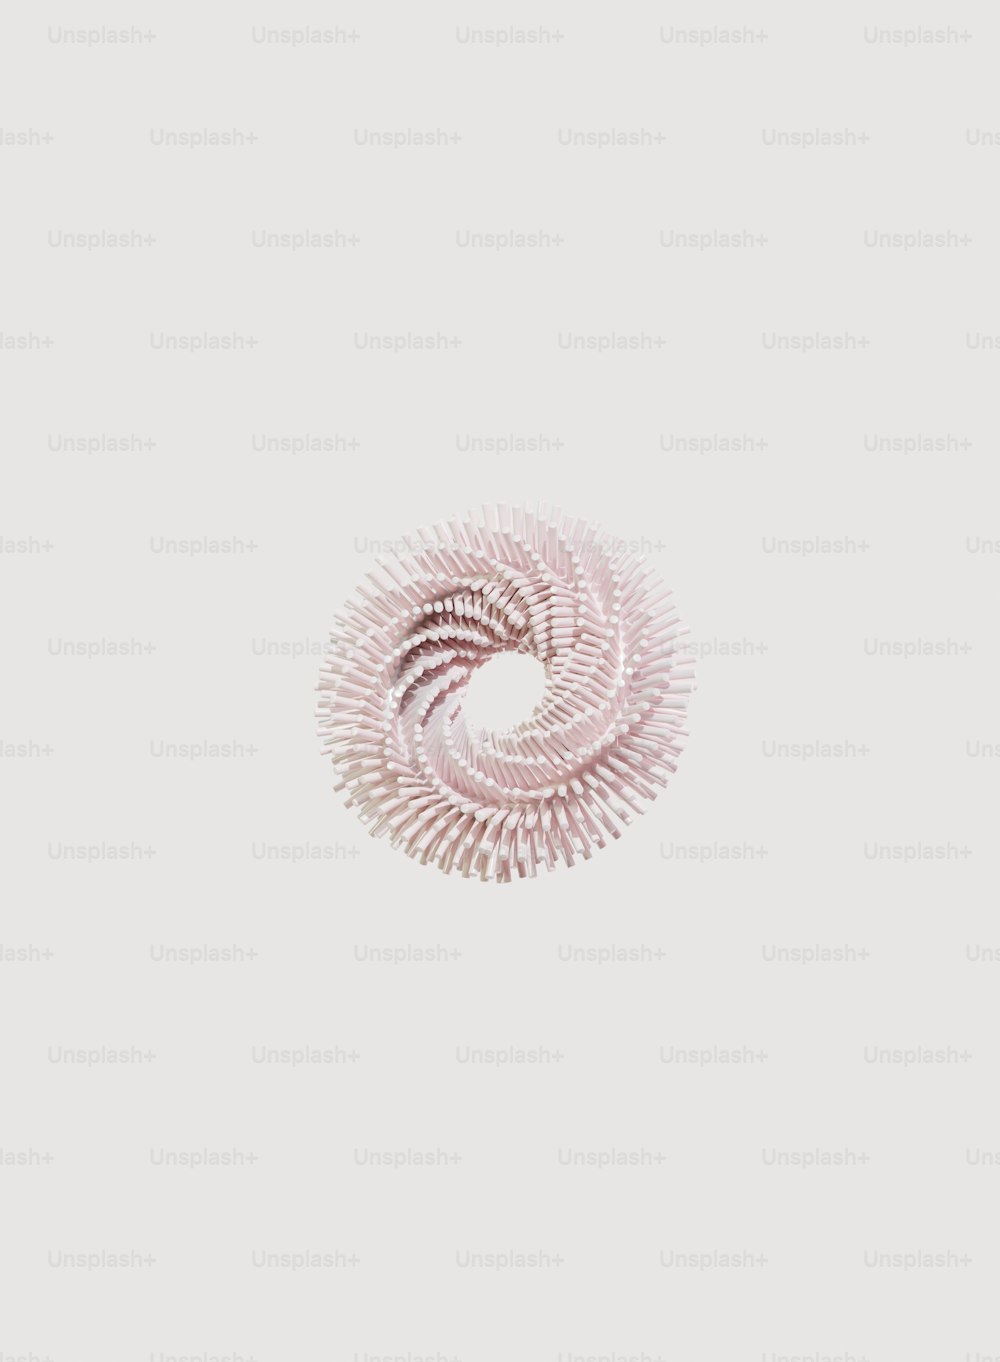 Ein spiralförmiges Objekt wird vor einem weißen Hintergrund angezeigt